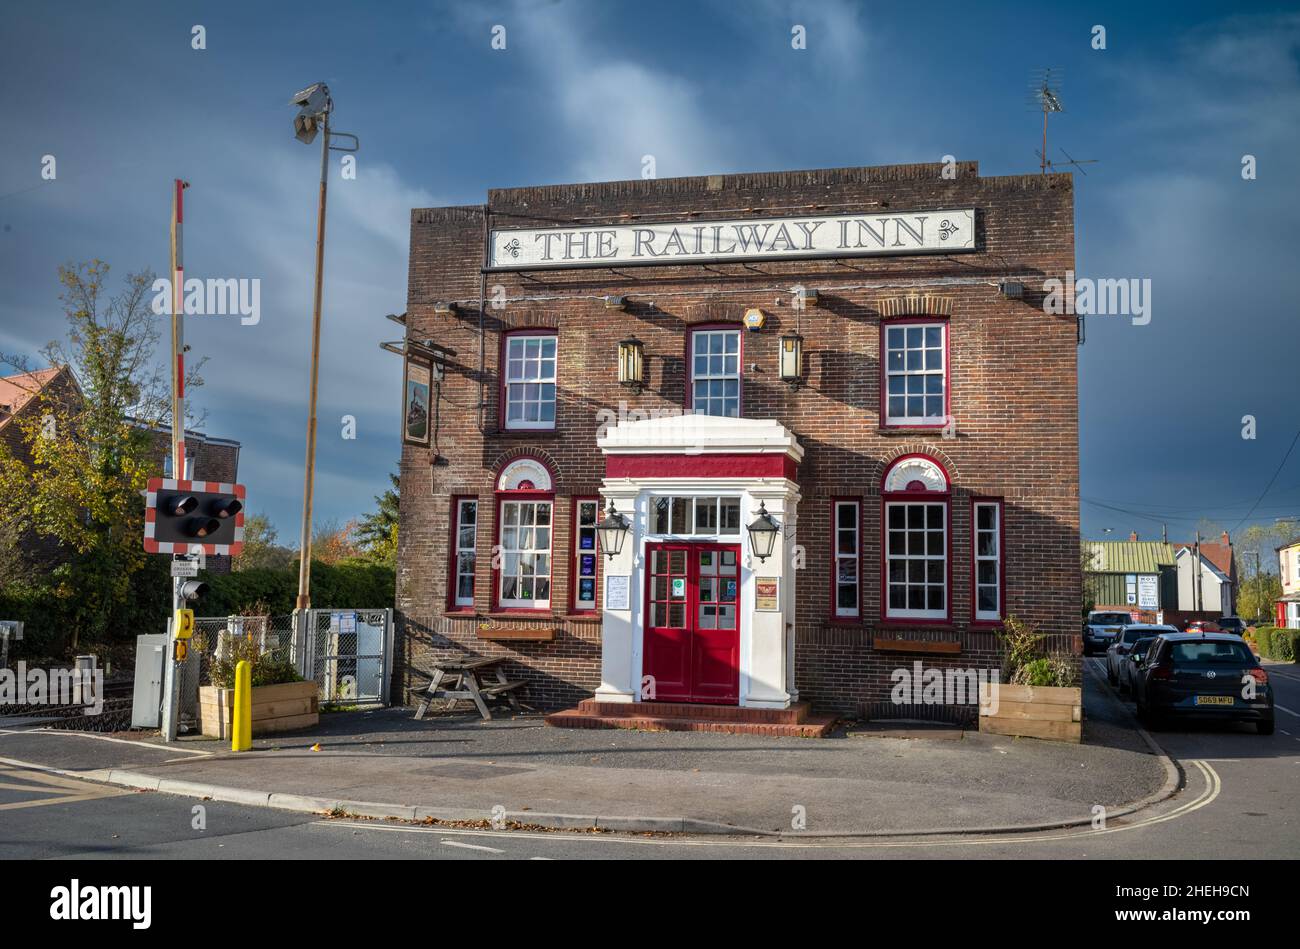 Das Railway Inn, ein traditionelles englisches Pub, befindet sich neben dem Bahnhof Billingshurst. Stockfoto